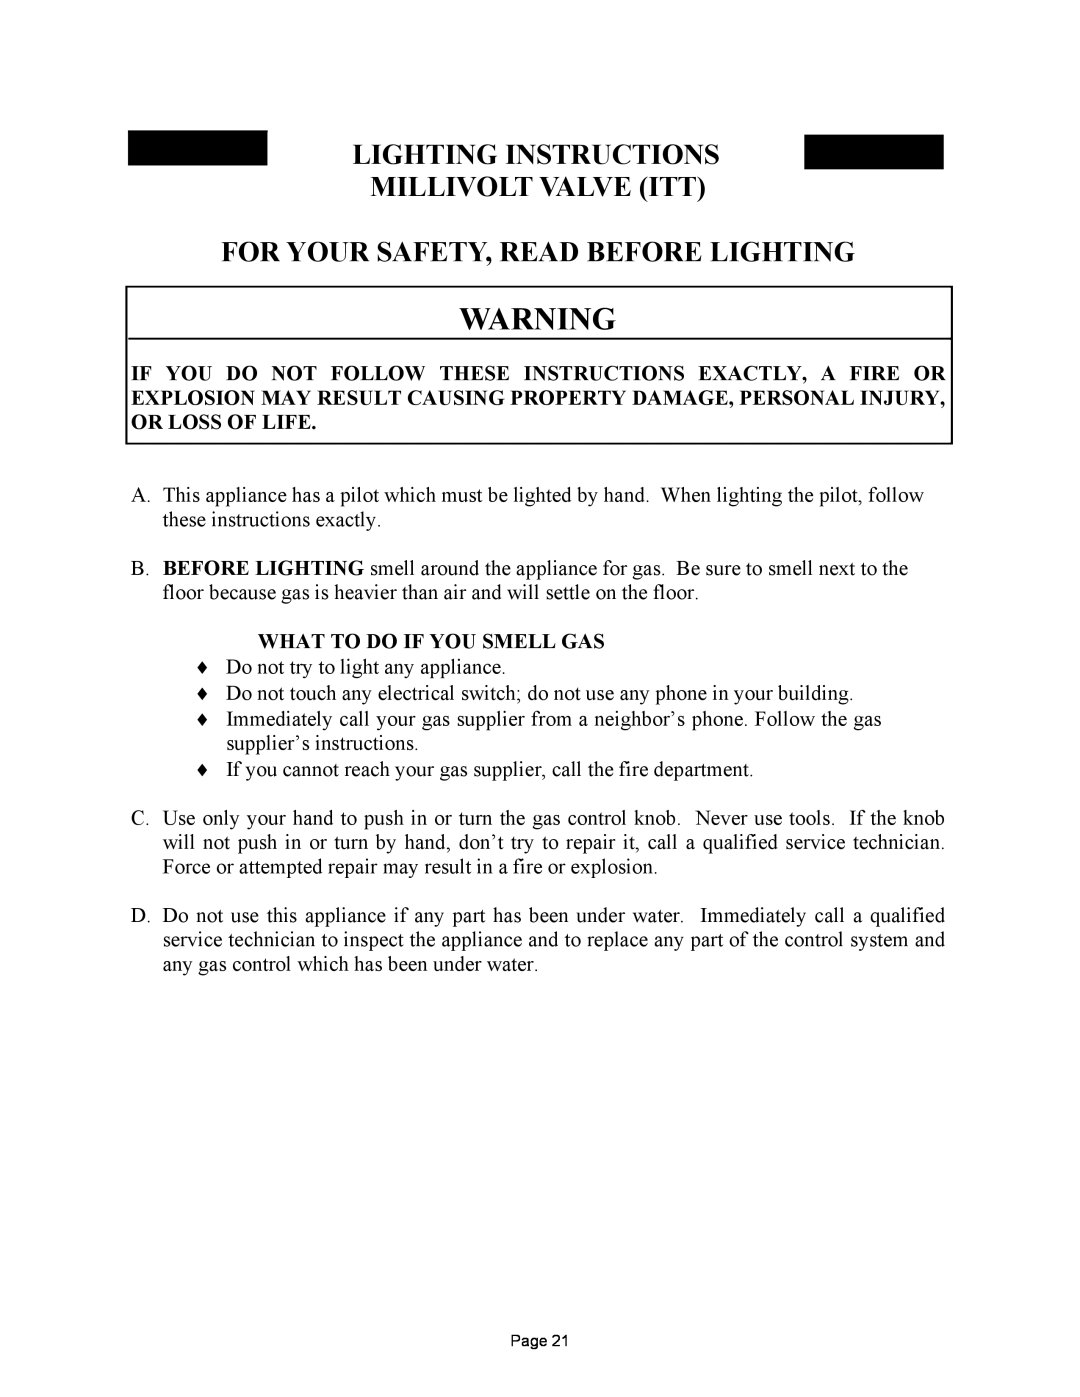 New Buck Corporation MODEL FP-327-ZC Lighting Instructions Millivolt Valve Itt, For Your Safety, Read Before Lighting 